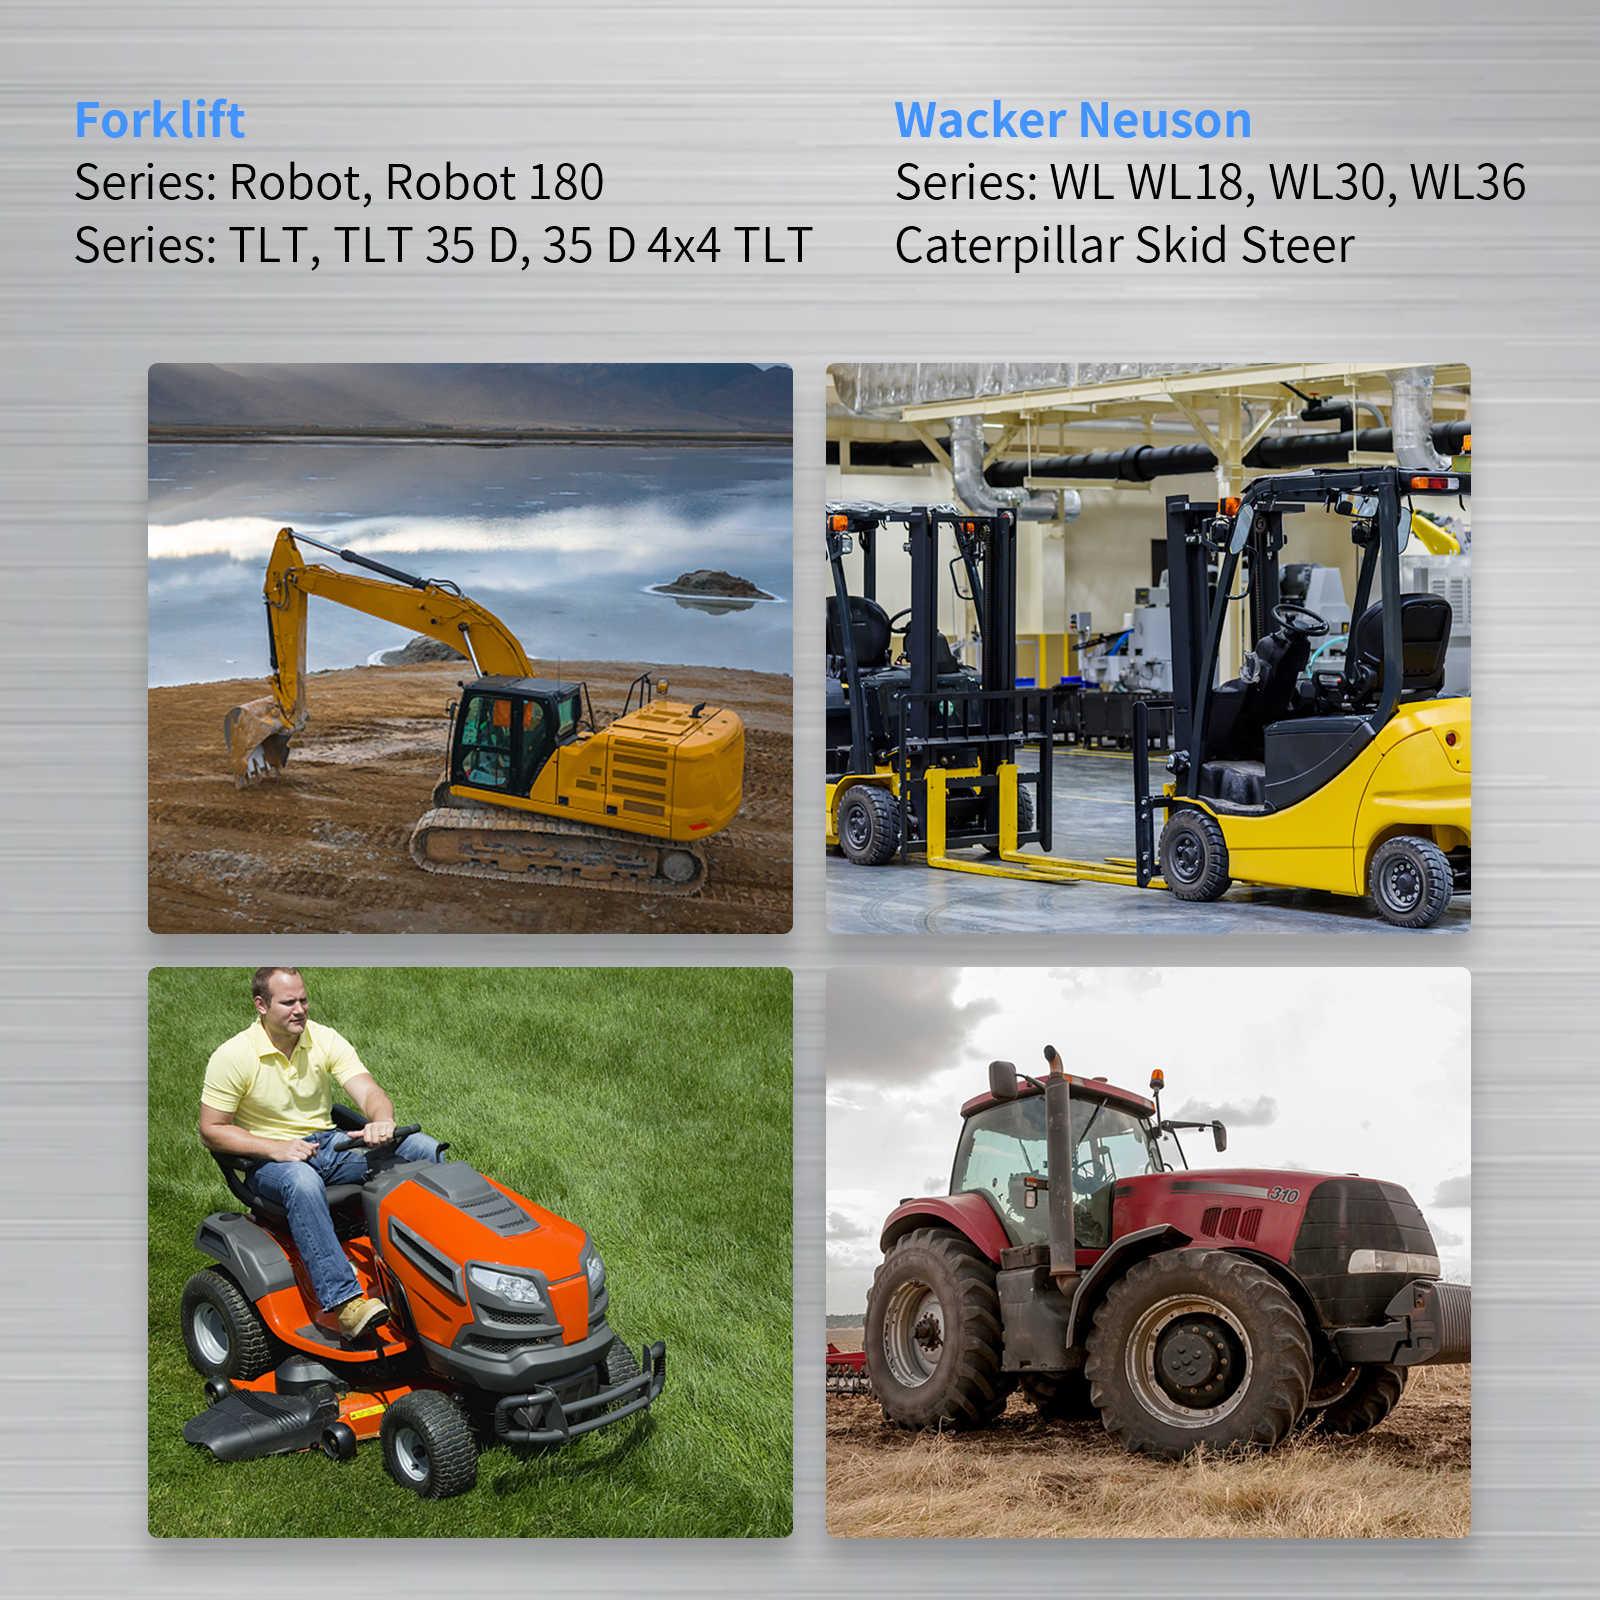 Fuel Shut Off Solenoid for excavators cranes lawn mowers tractors